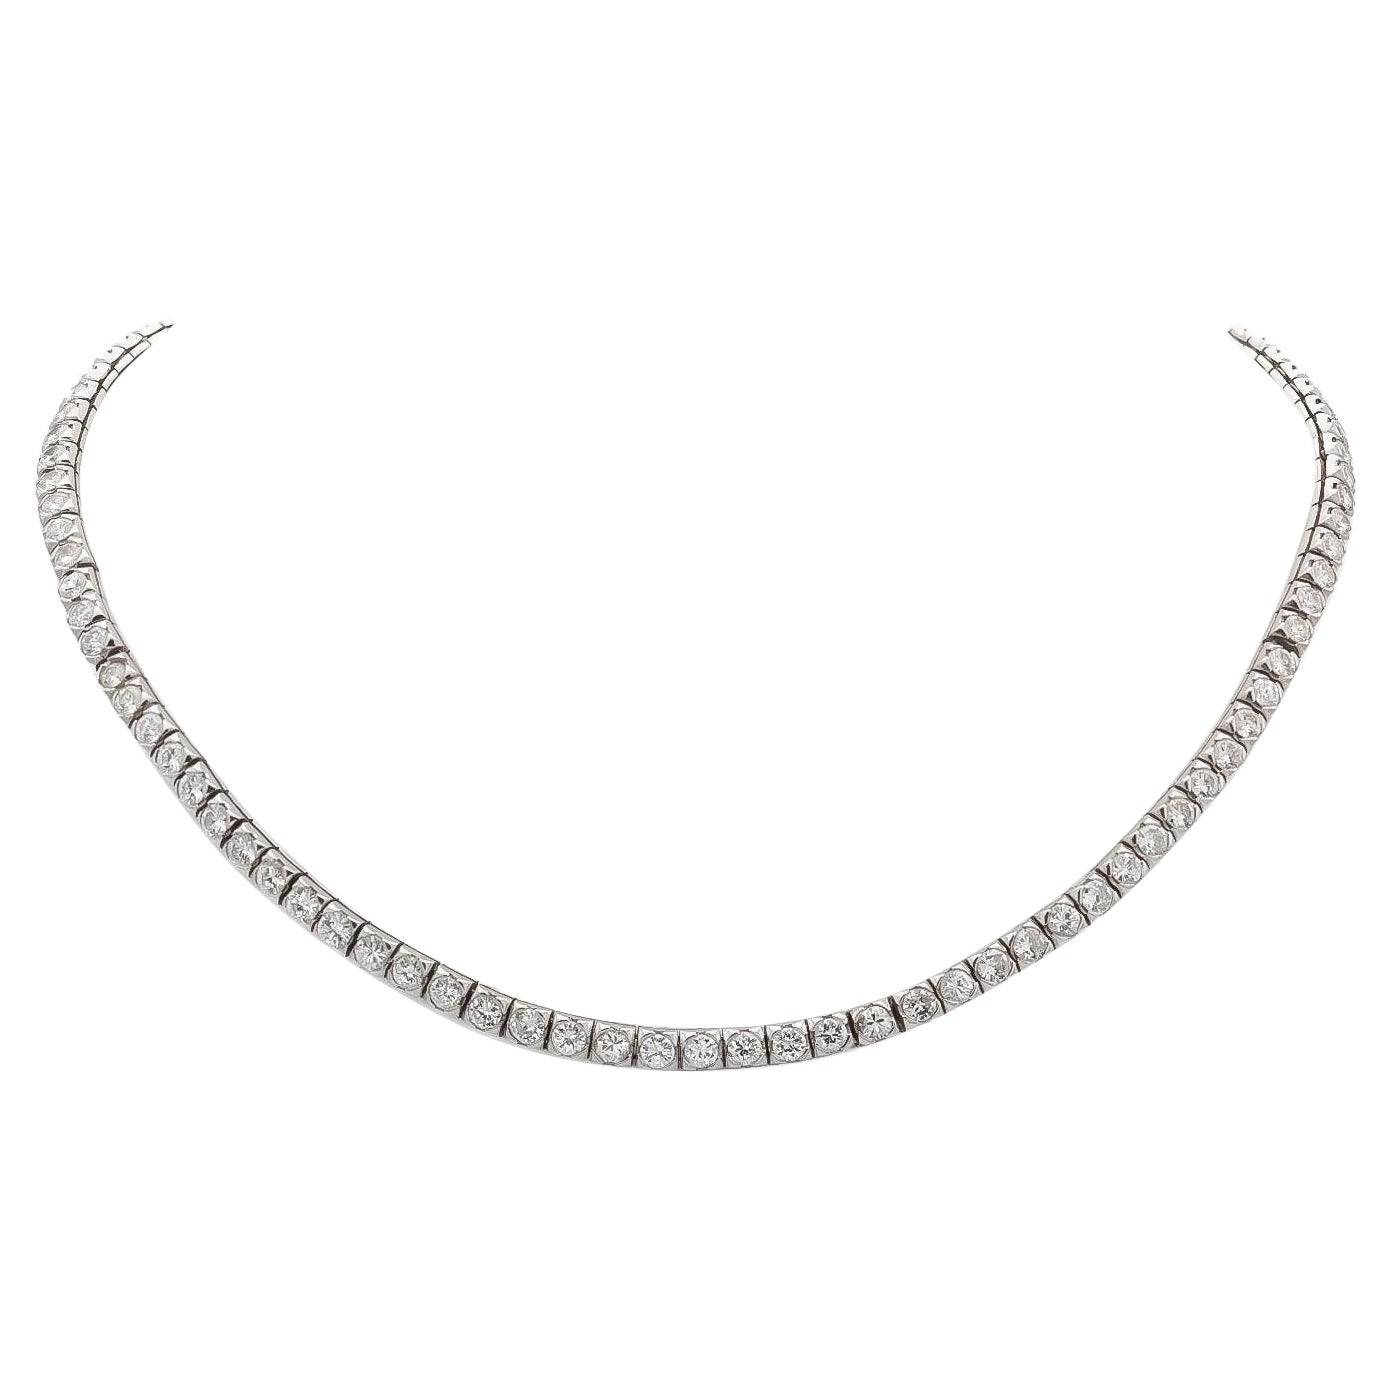 10.00 Carat Diamond Line Necklace